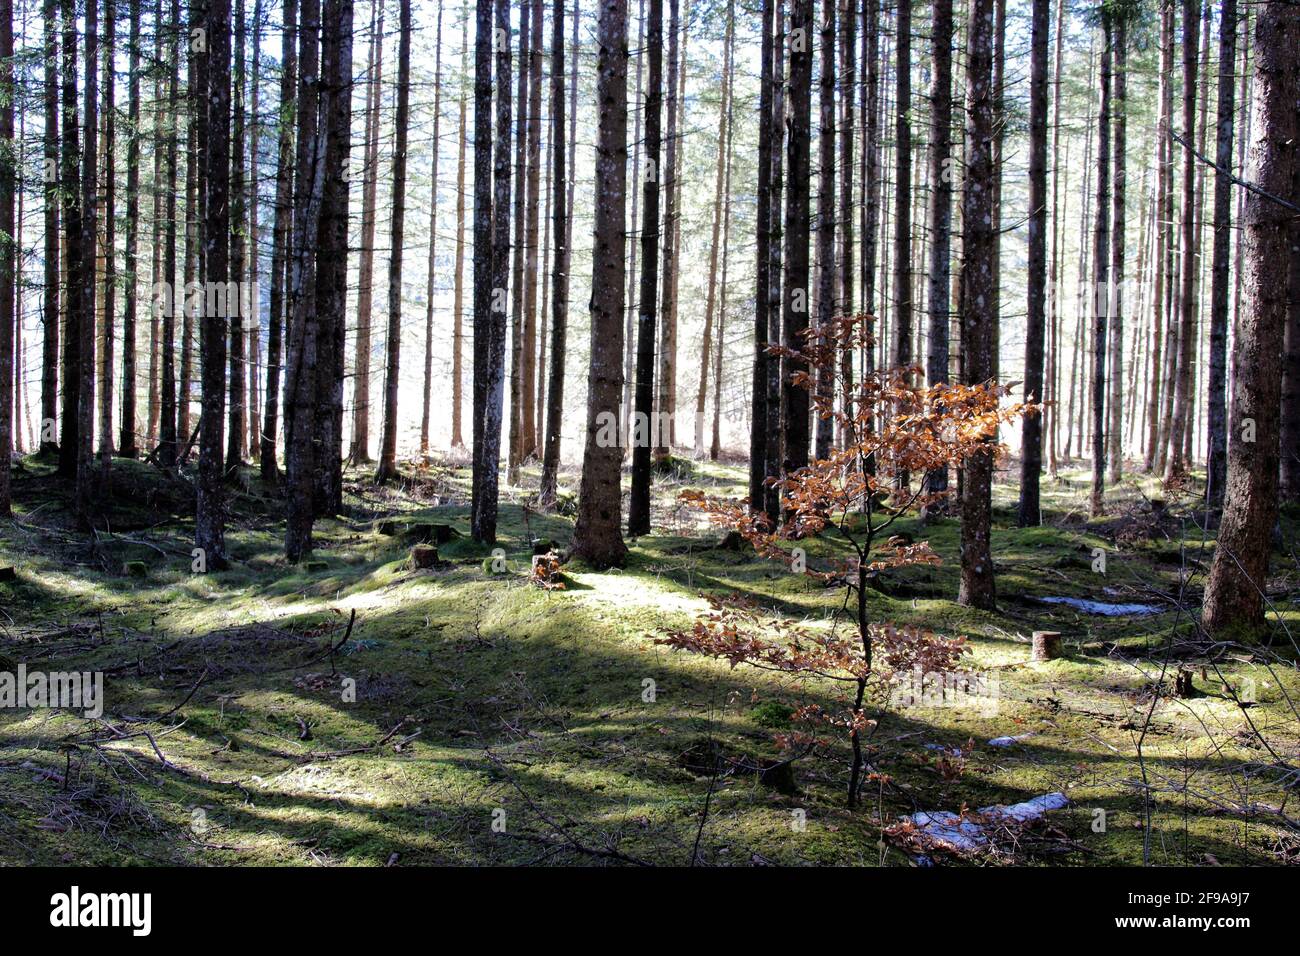 Escursione invernale nei pressi di Krün, foresta di Barmsee, faggio con foglie illuminato dal sole, Europa, Germania, Baviera, alta Baviera, Werdenfels, inverno, paesaggio forestale con gioco del sole Foto Stock